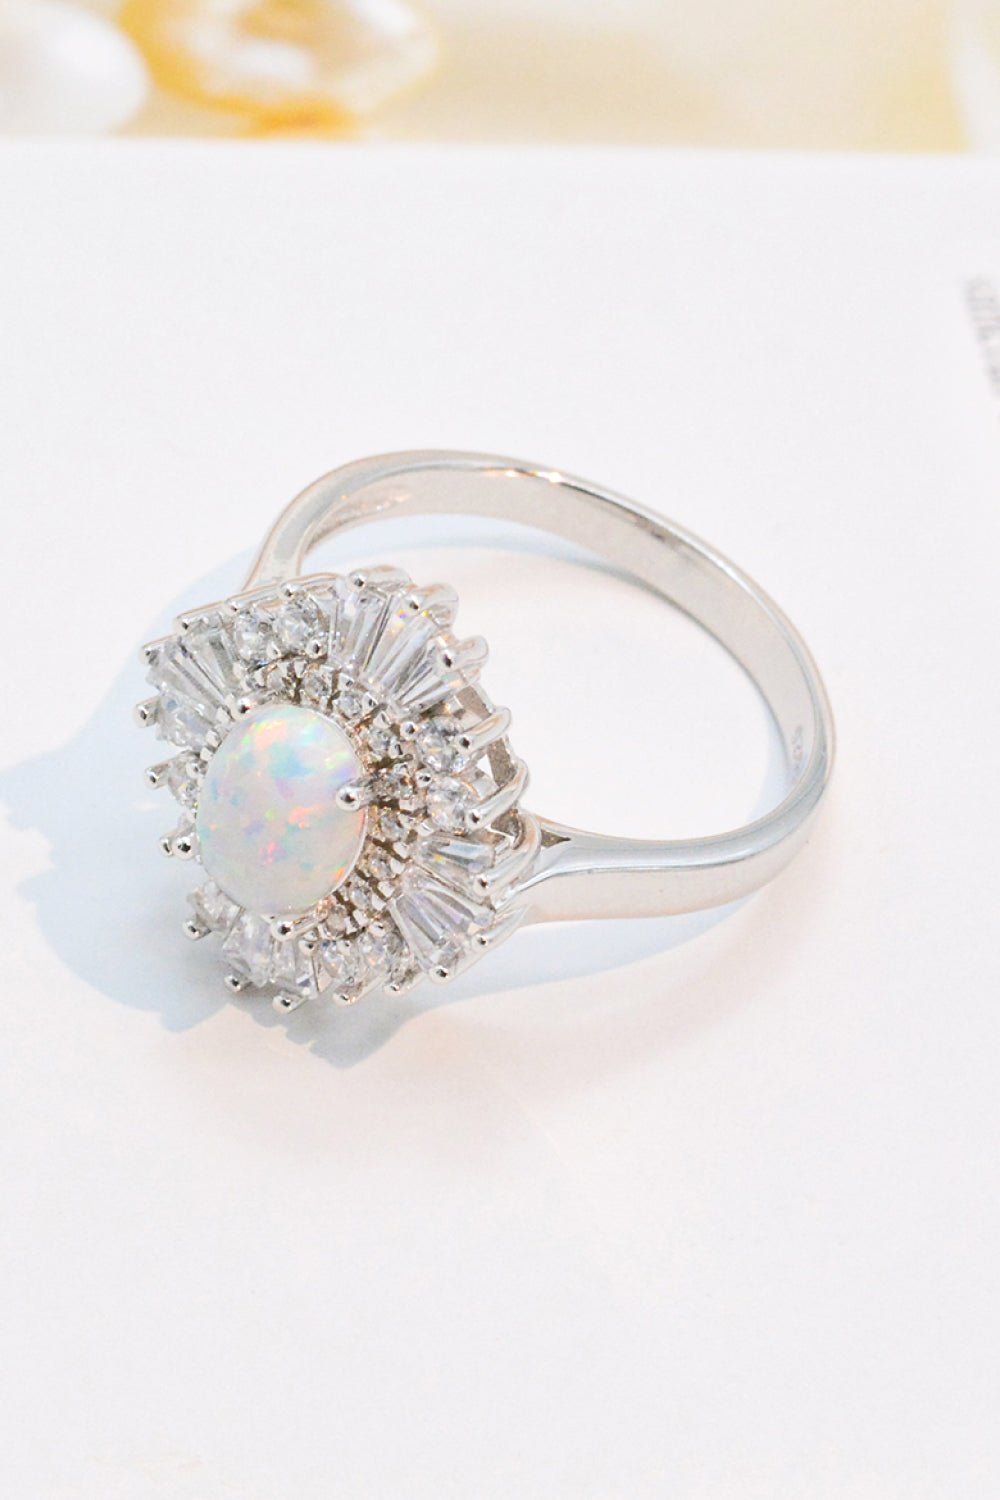 Women’s Modern 925 Sterling Silver Opal Halo Ring